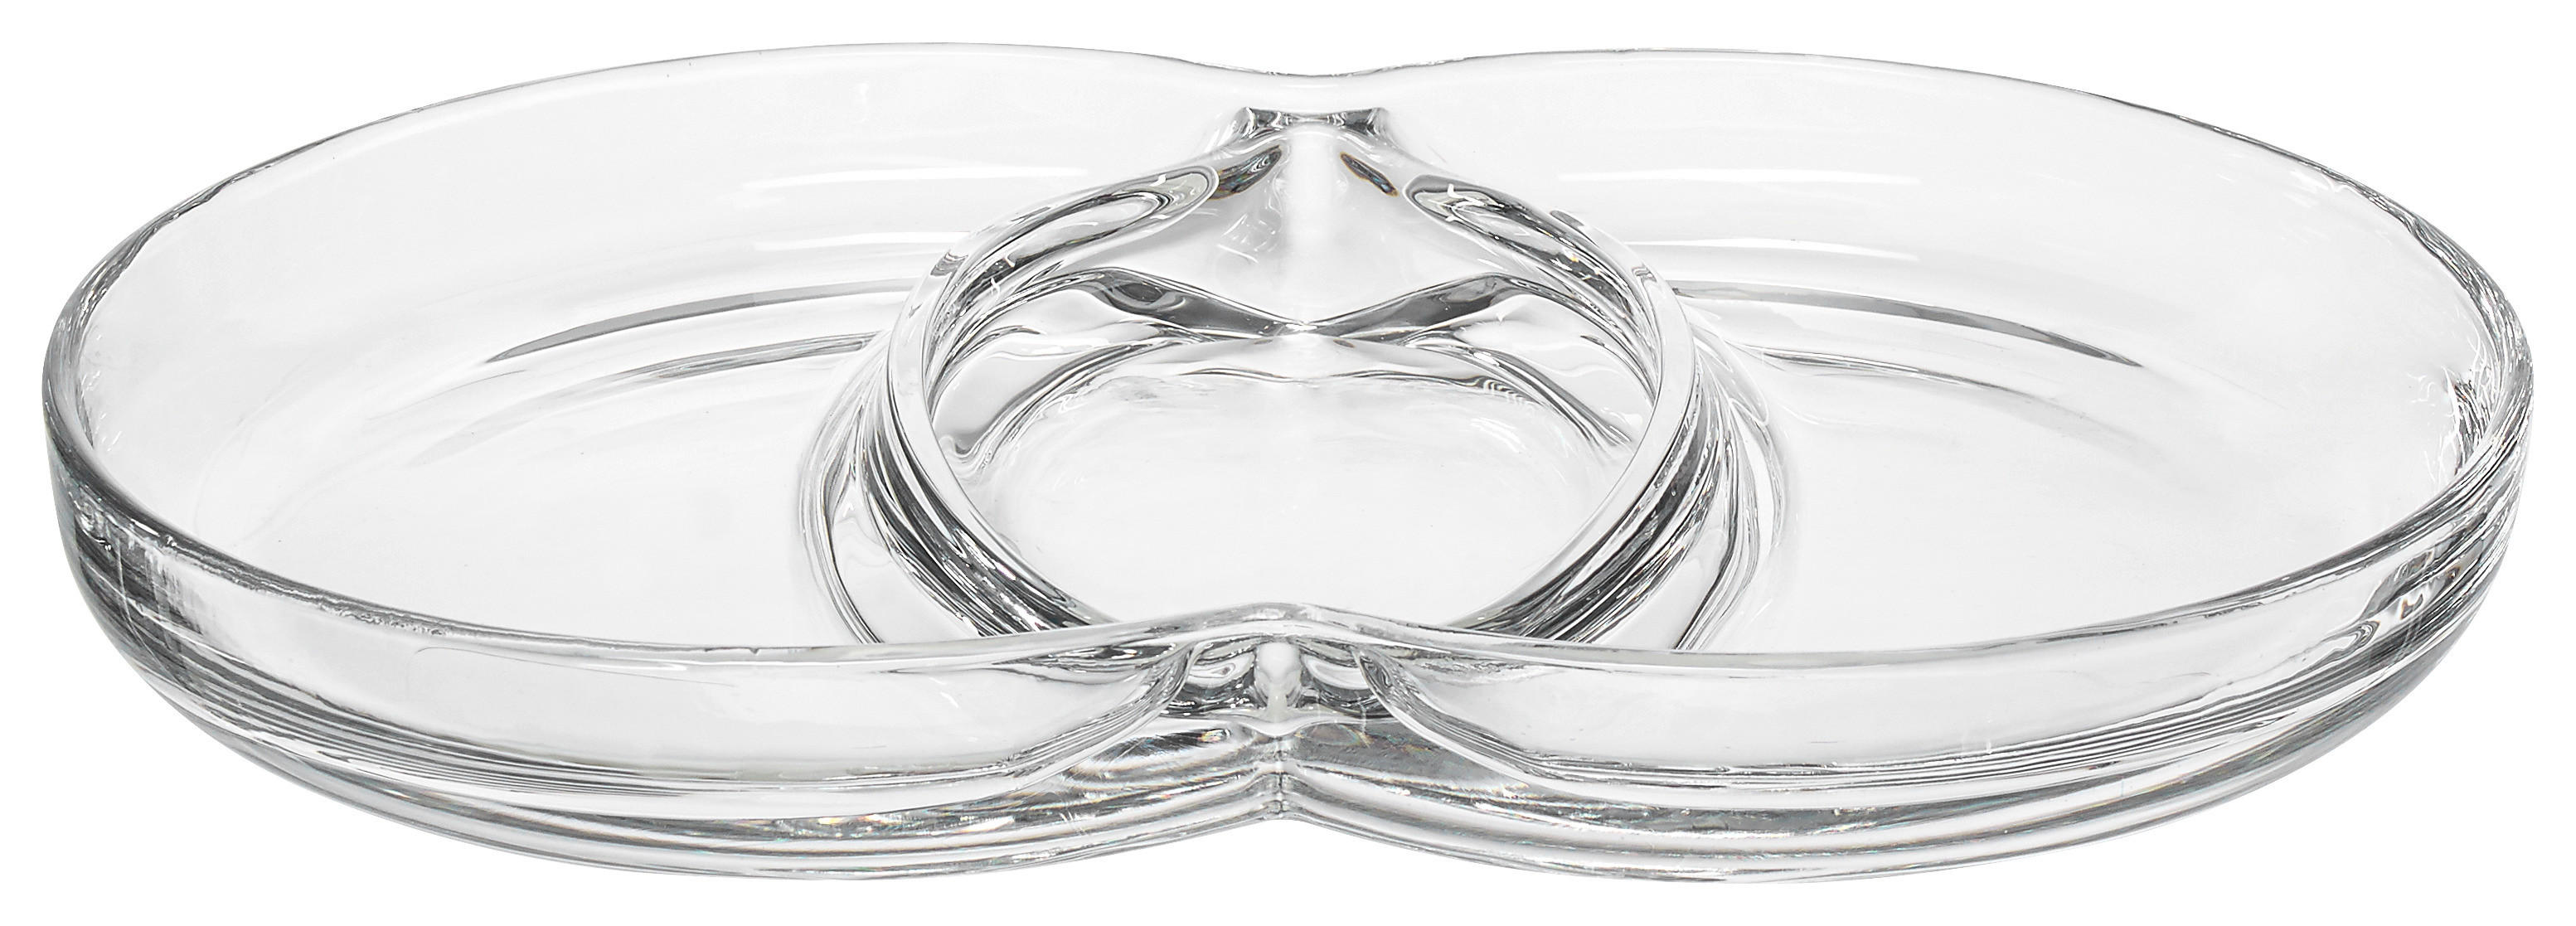 SNACKSCHALE Glas  - Transparent, Design, Glas (27/18/3,50cm) - Leonardo